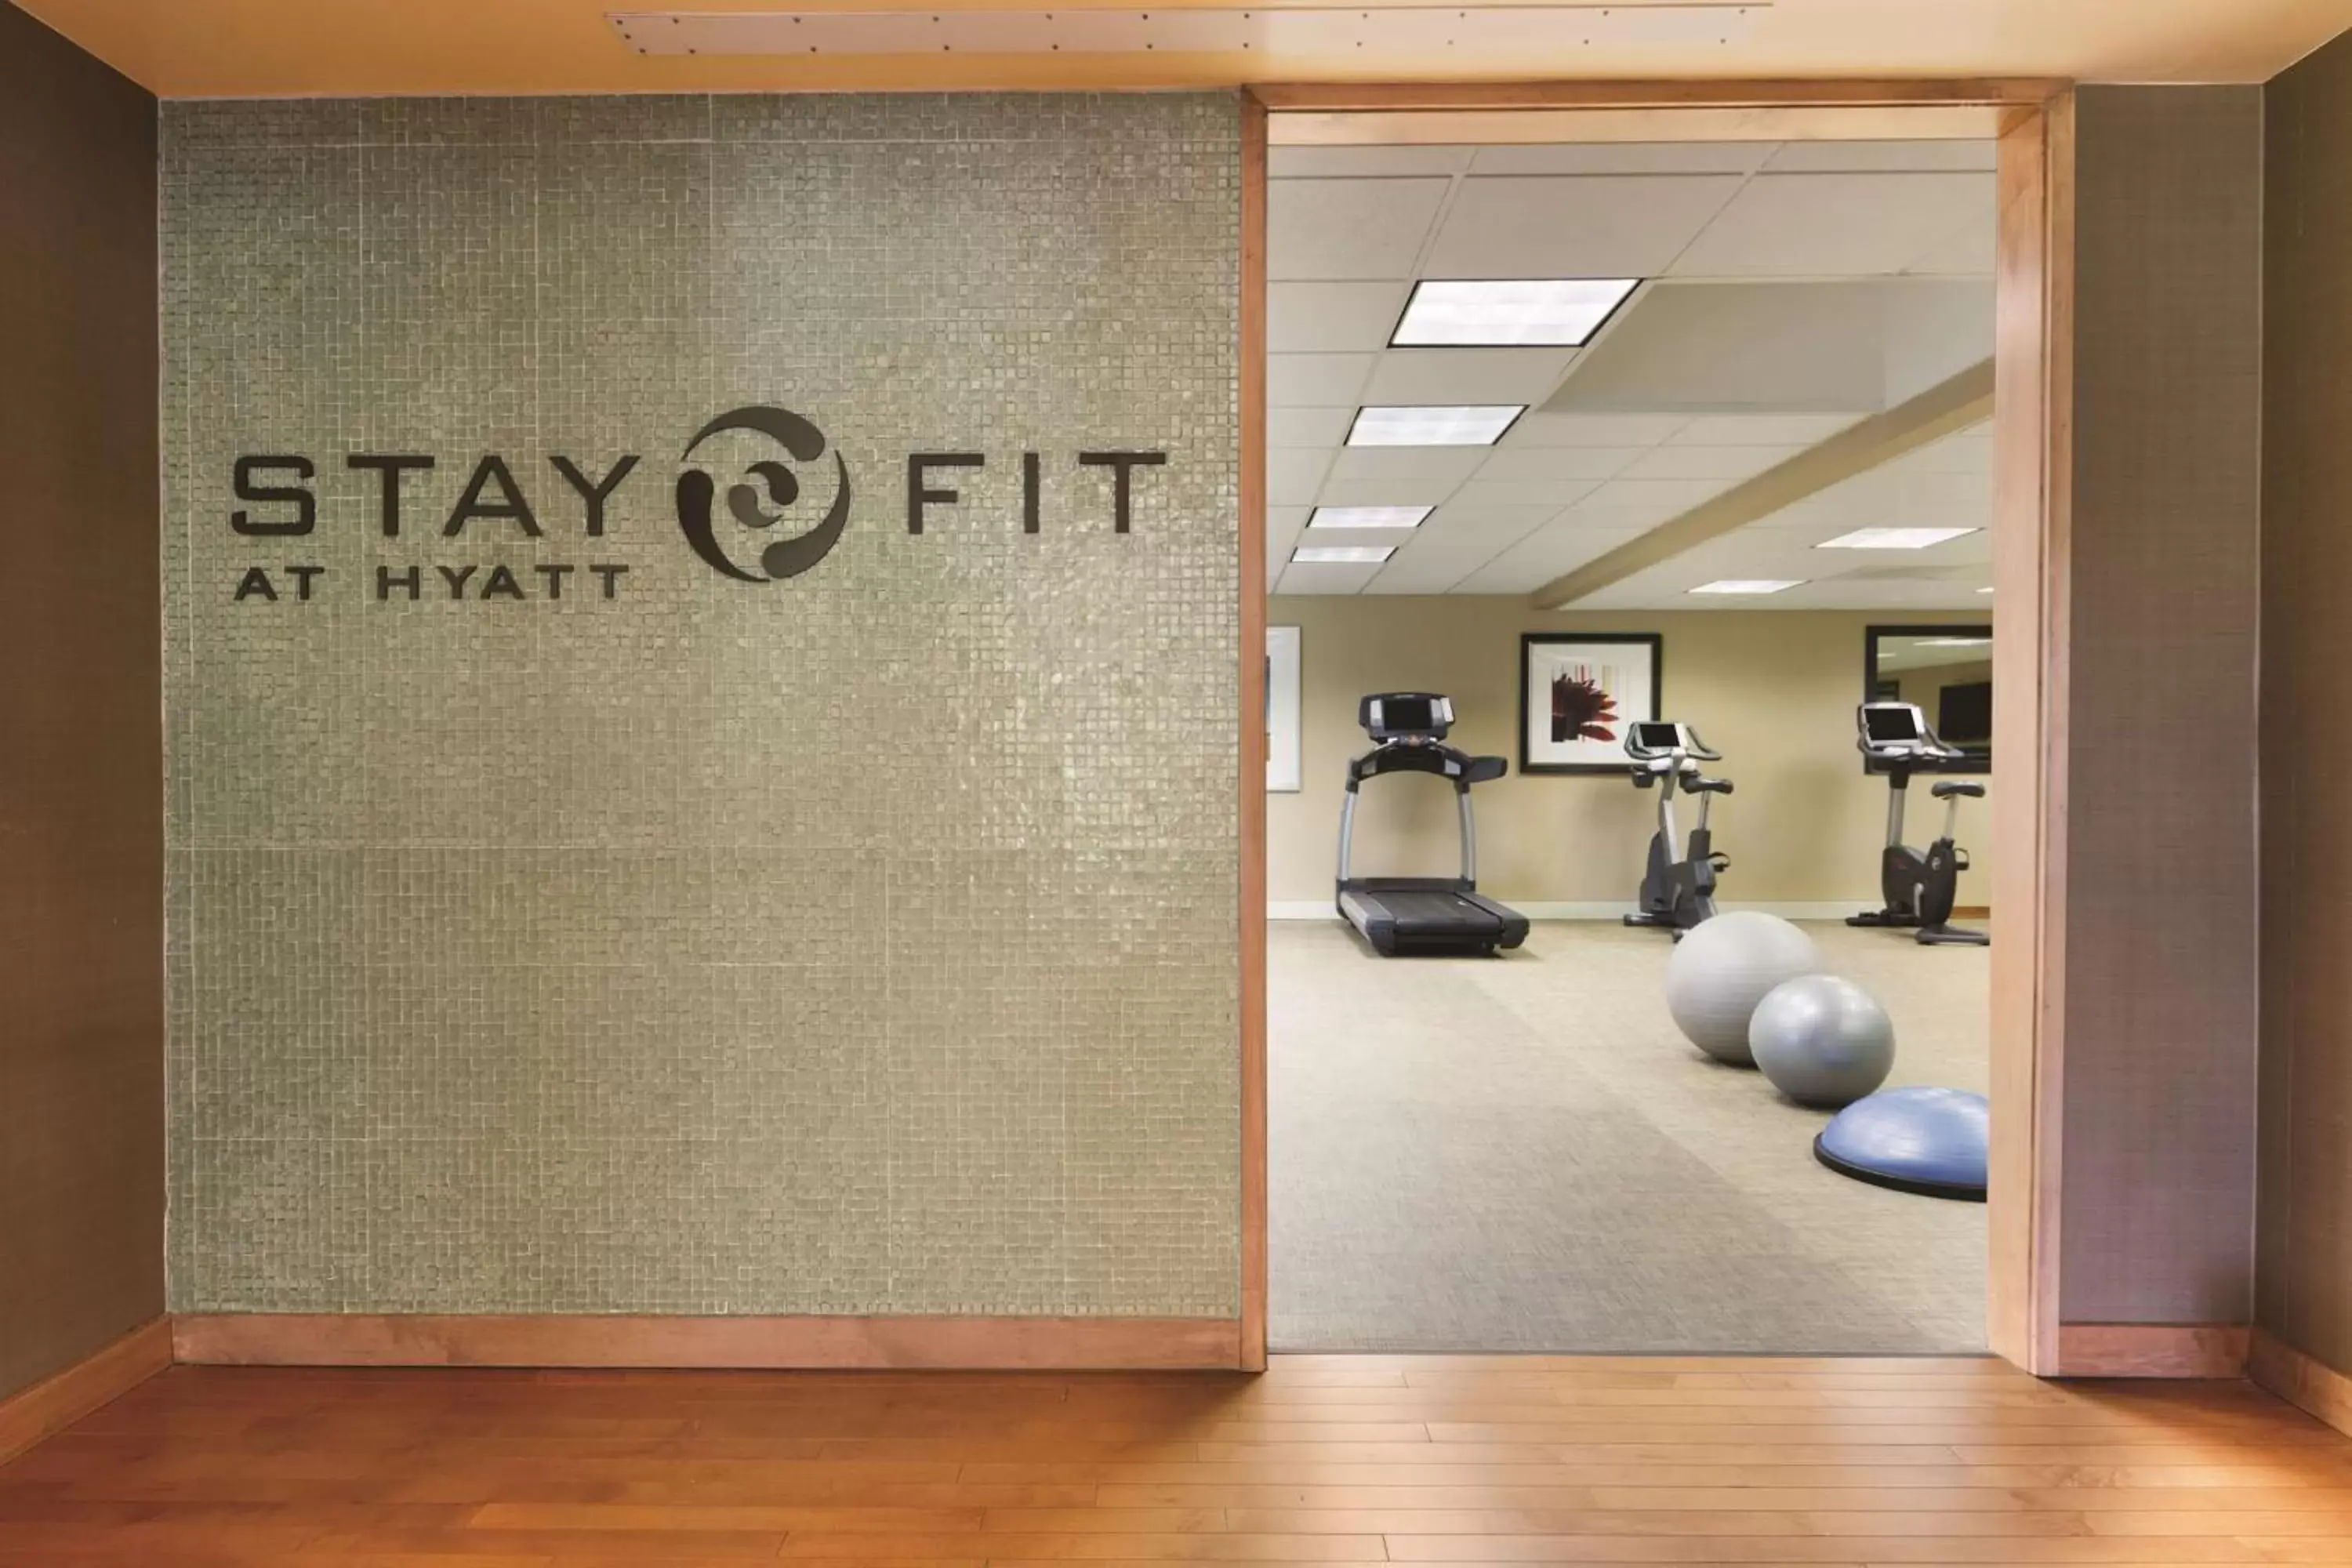 Fitness centre/facilities in Hyatt Regency Wichita